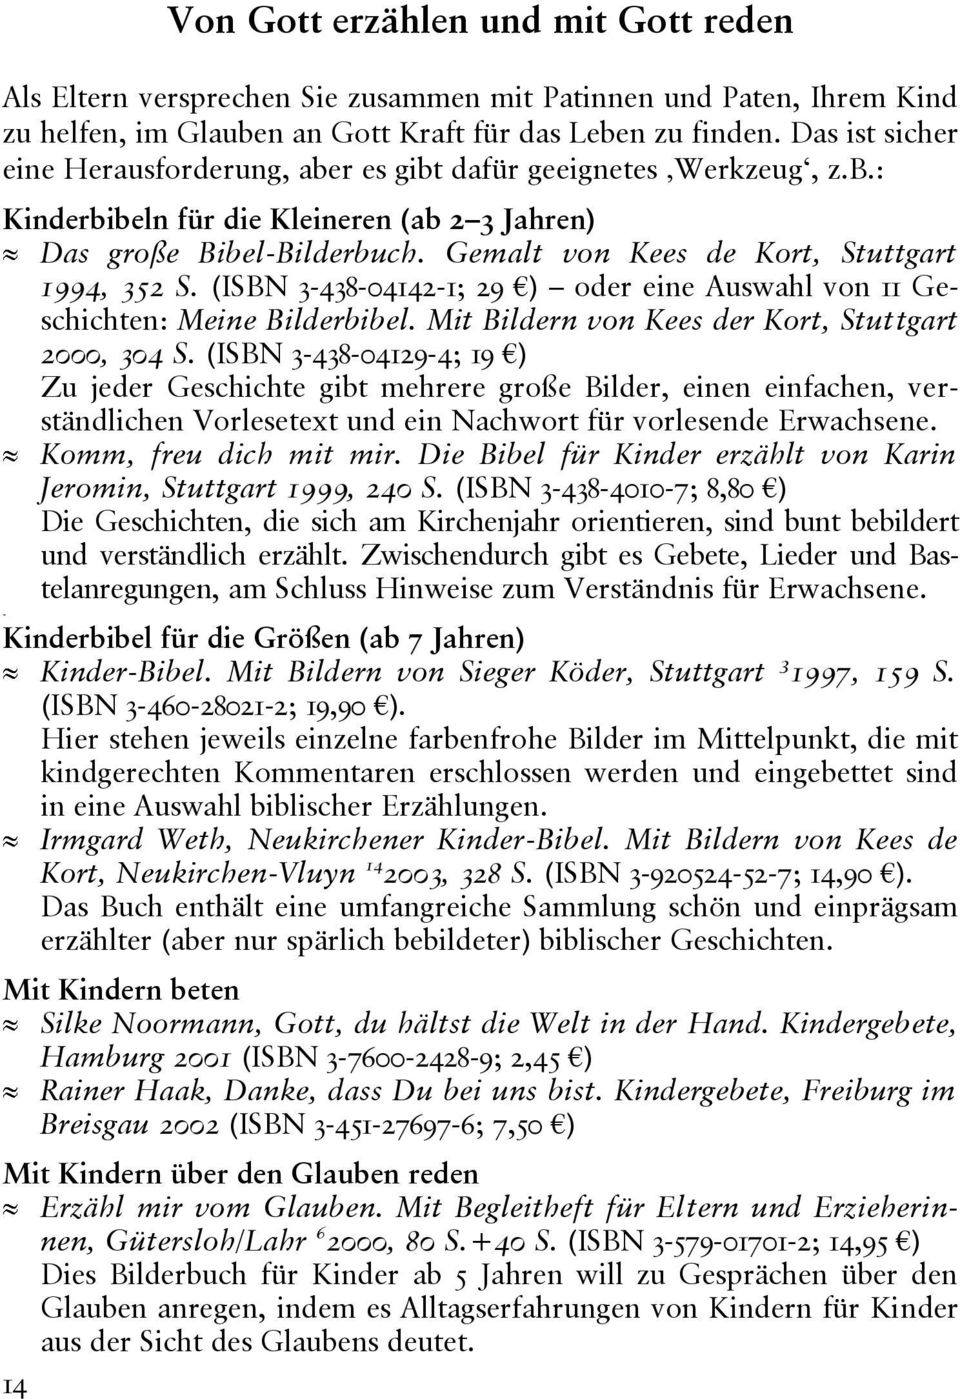 Gemalt von Kees de Kort, Stuttgart 1994, 352 S. (ISBN 3-438-04142-1; 29 ) oder eine Auswahl von 11 Geschichten: Meine Bilderbibel. Mit Bildern von Kees der Kort, Stuttgart 2000, 304 S.